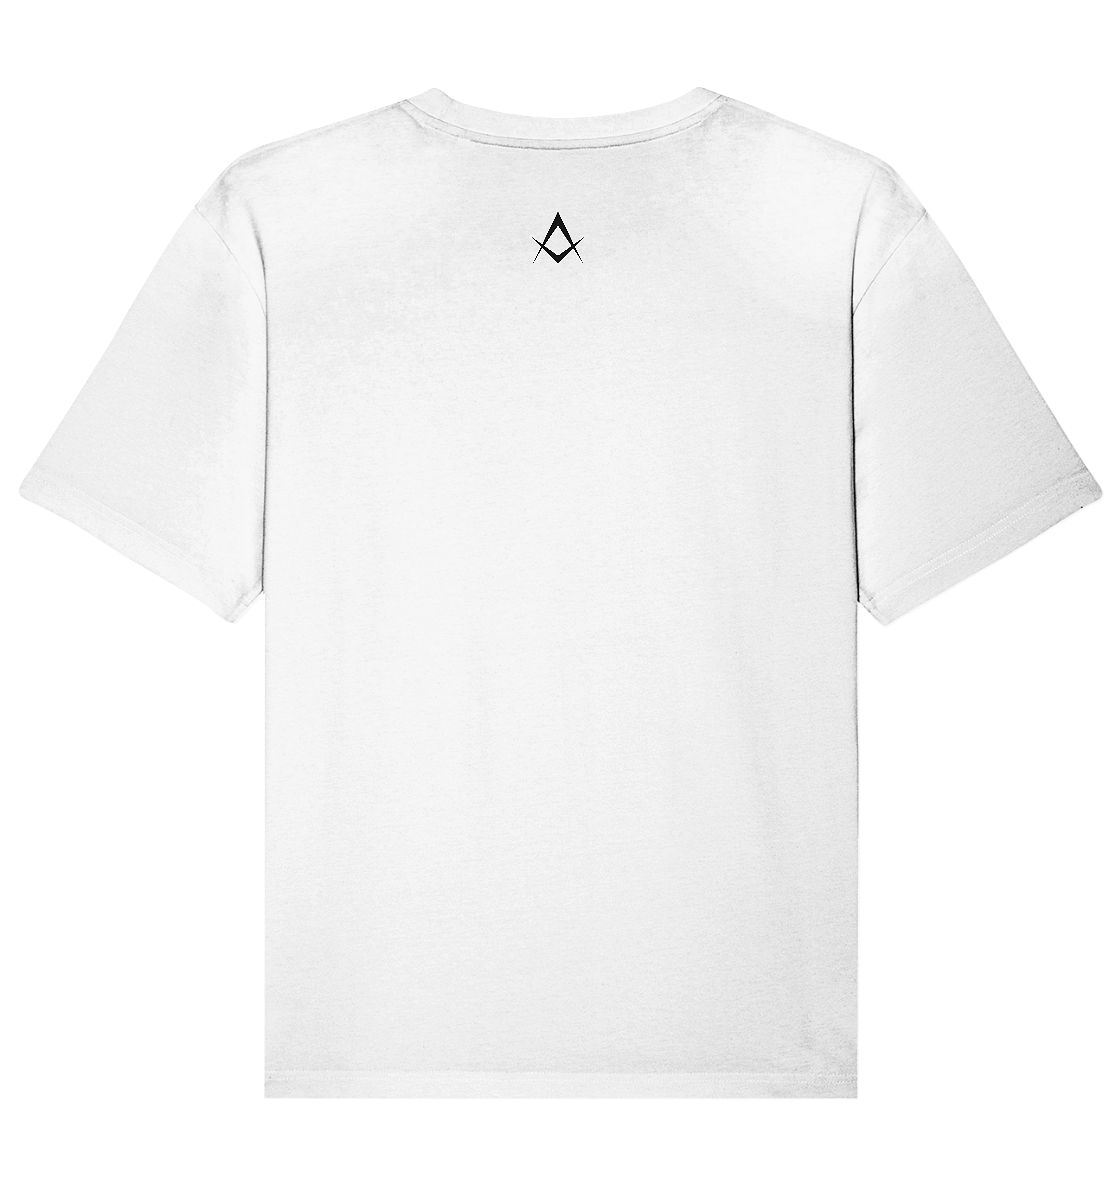 SOCIÉTÉ T Shirt | unisex (weiß) - ÈNDÉ société